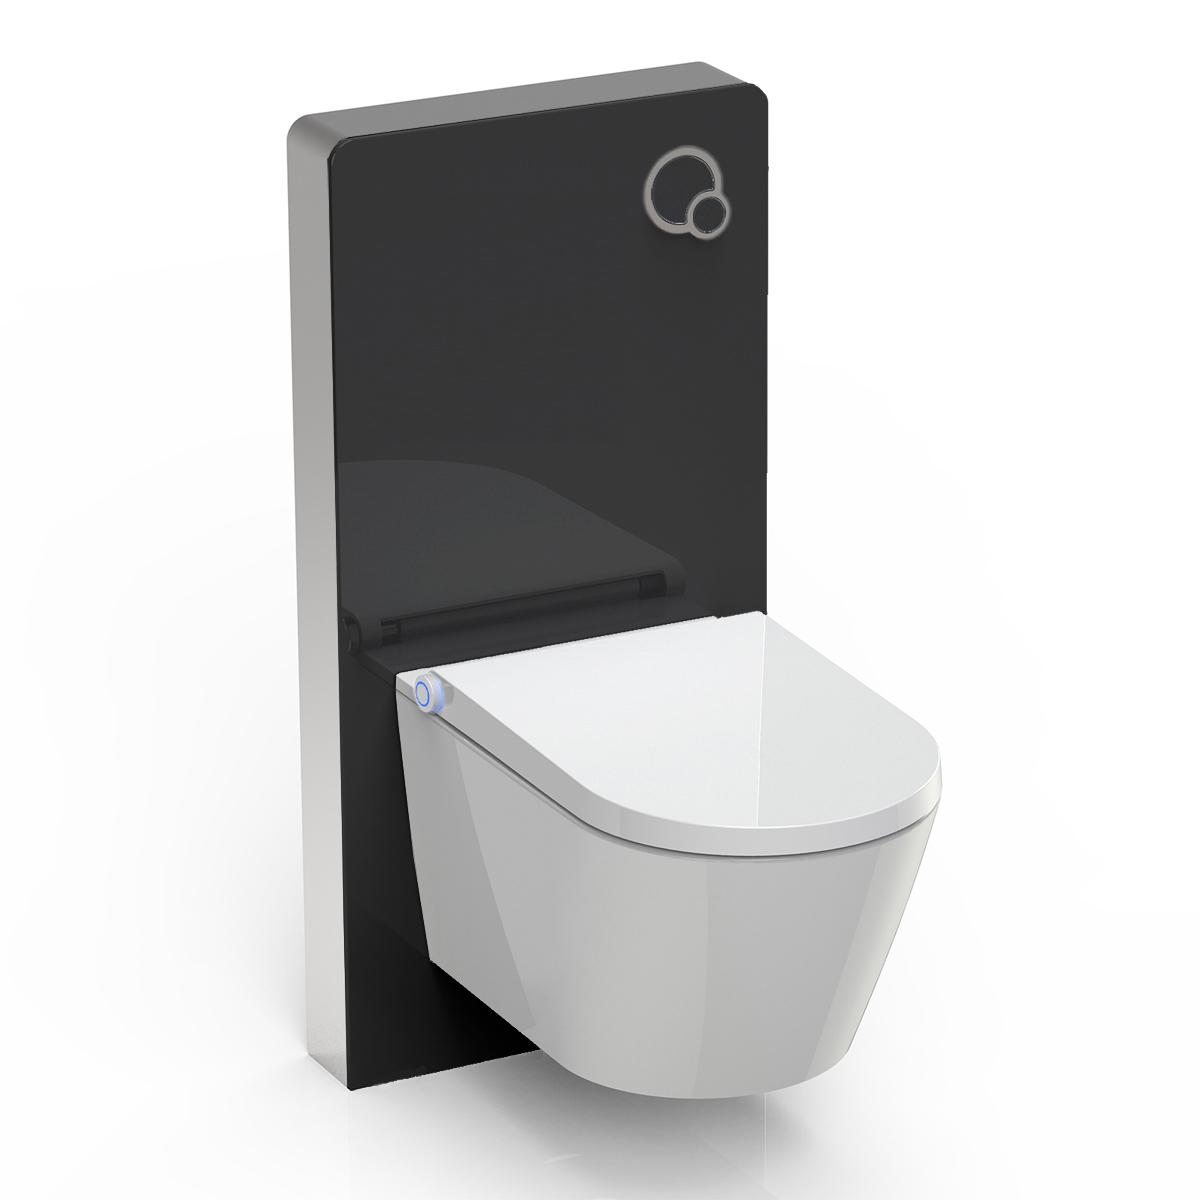 WC-Sparpaket 7: Dusch-WC Basic 1102 & Sanitärmodul 805 in Schwarz von Bernstein